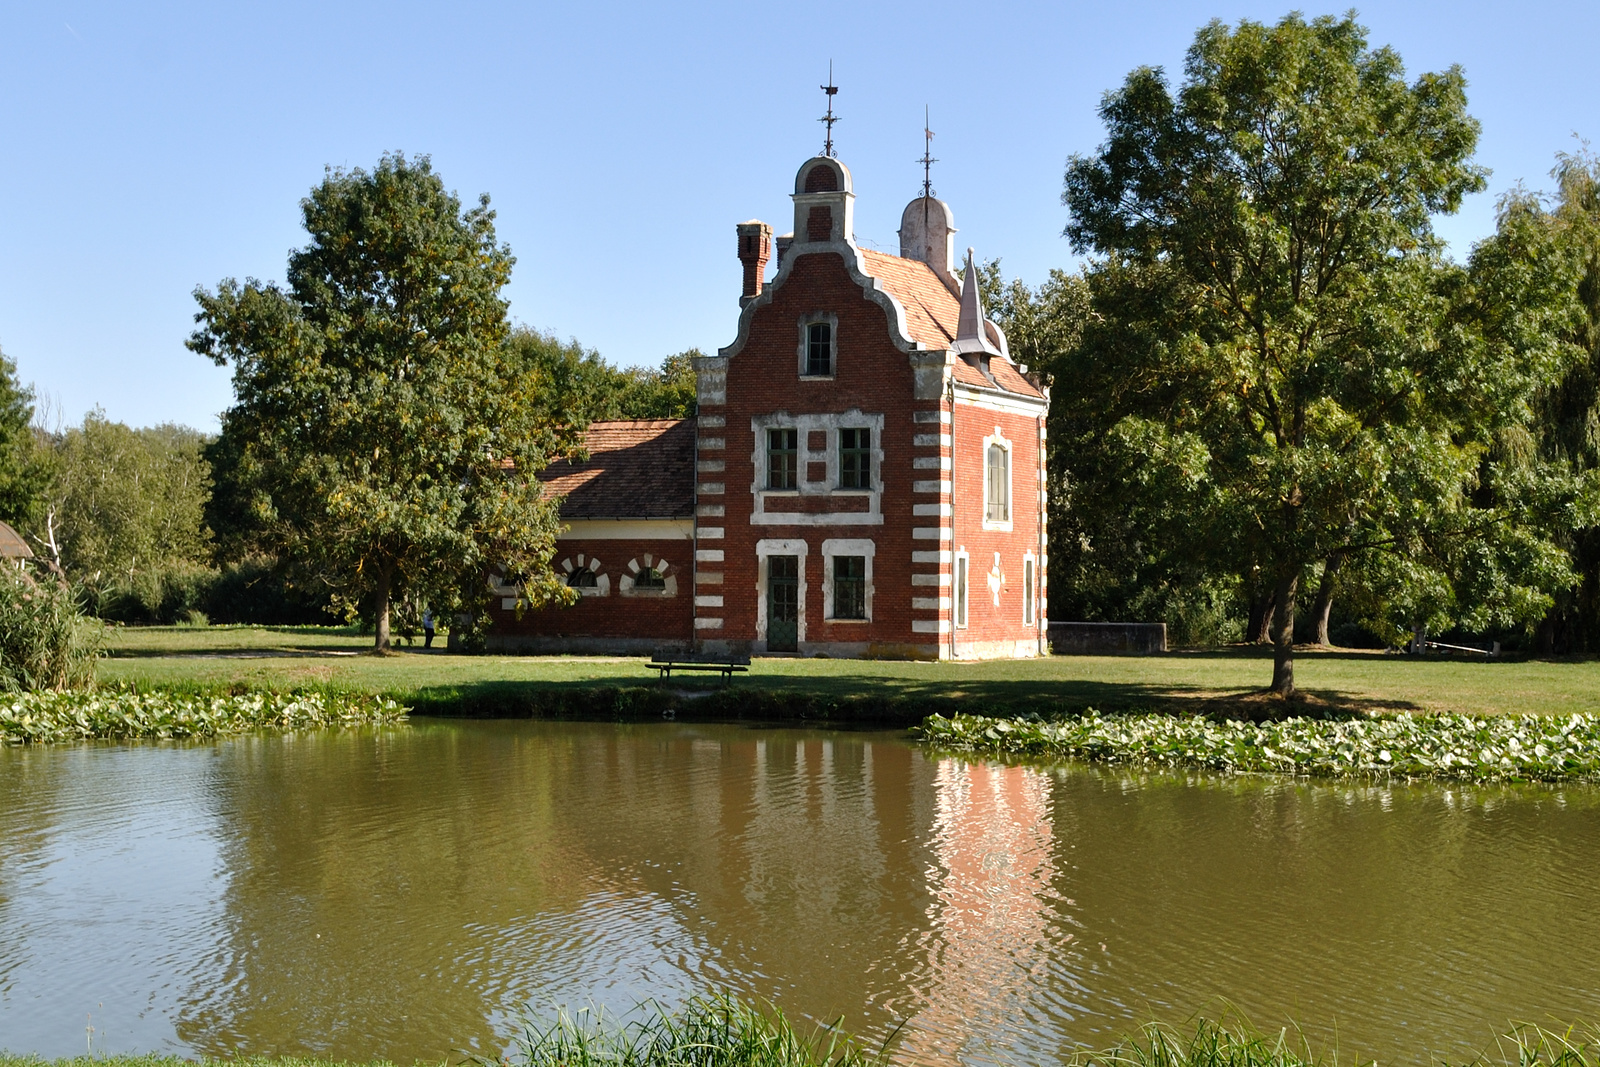 Hollandi ház - Festetics kastély